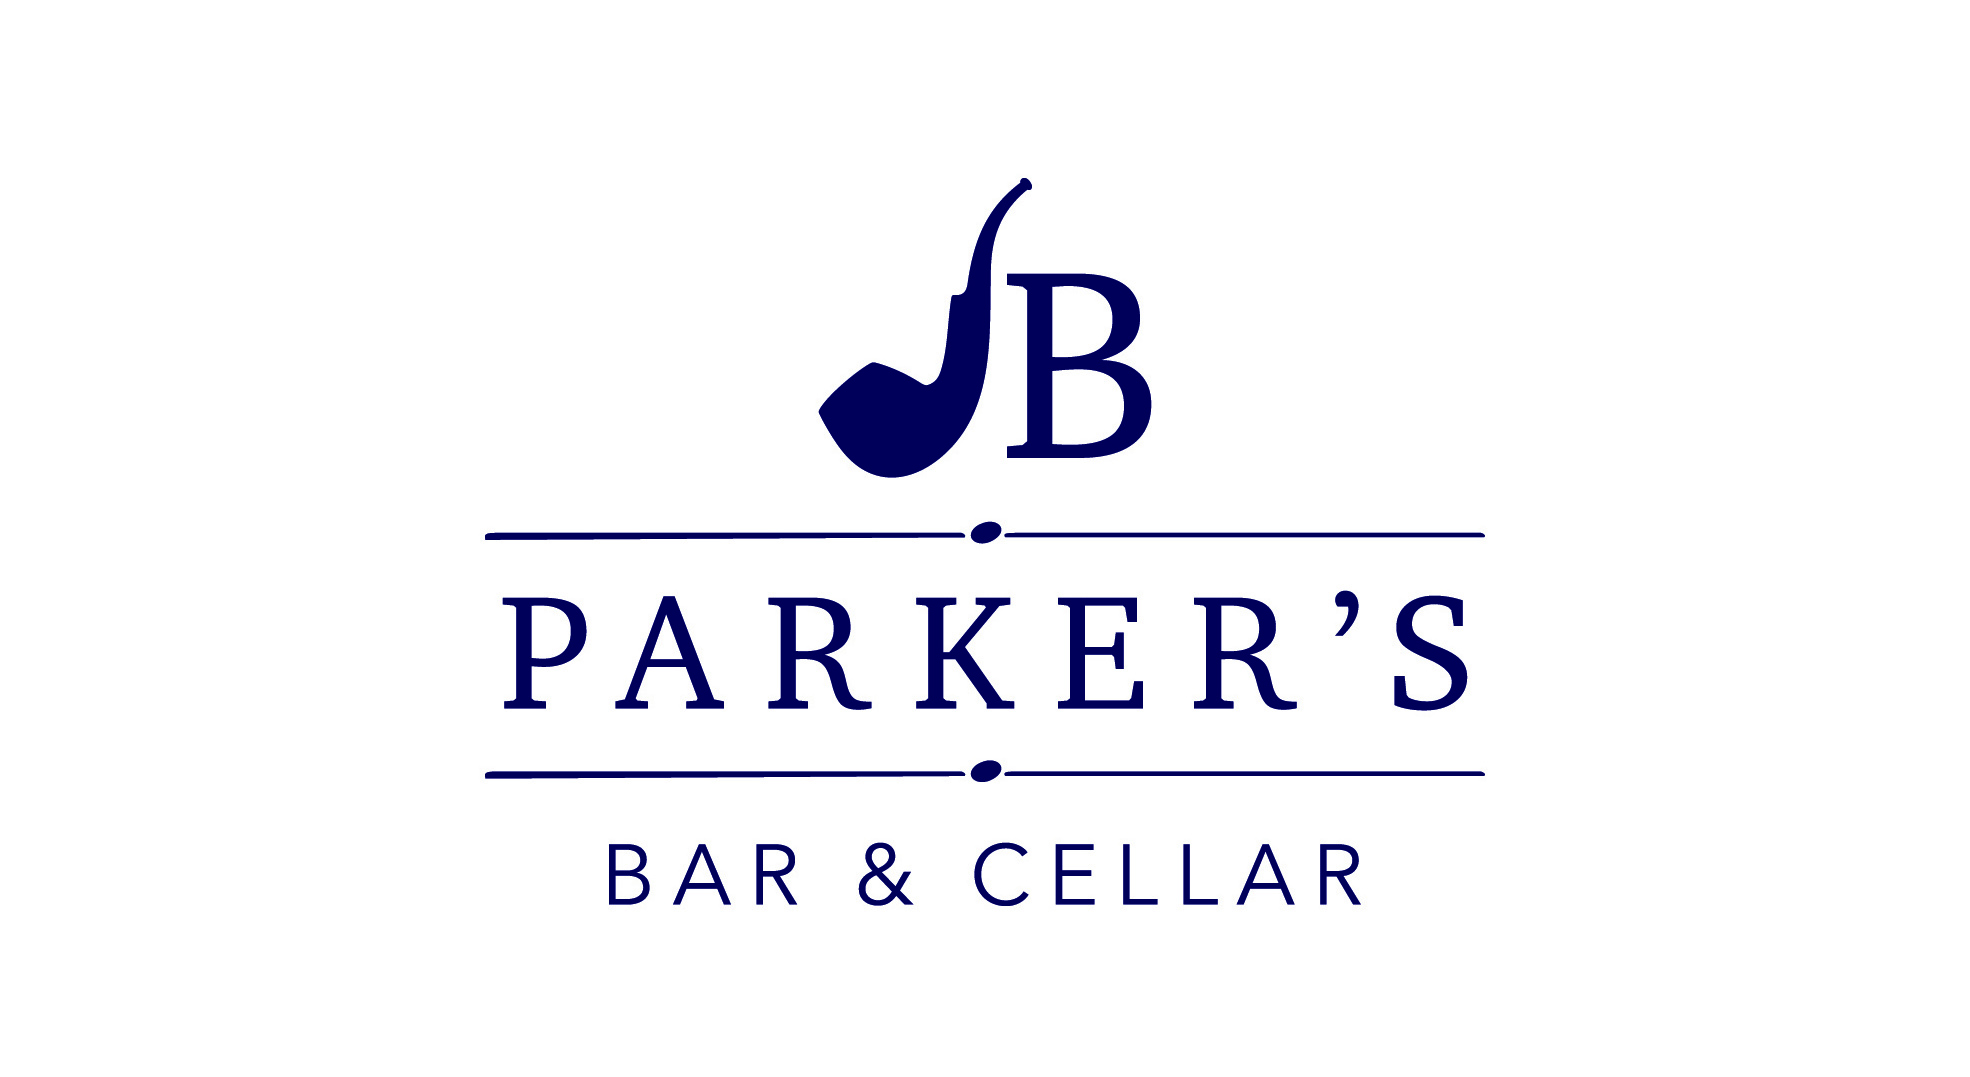 JB Parker's Bar & Cellar